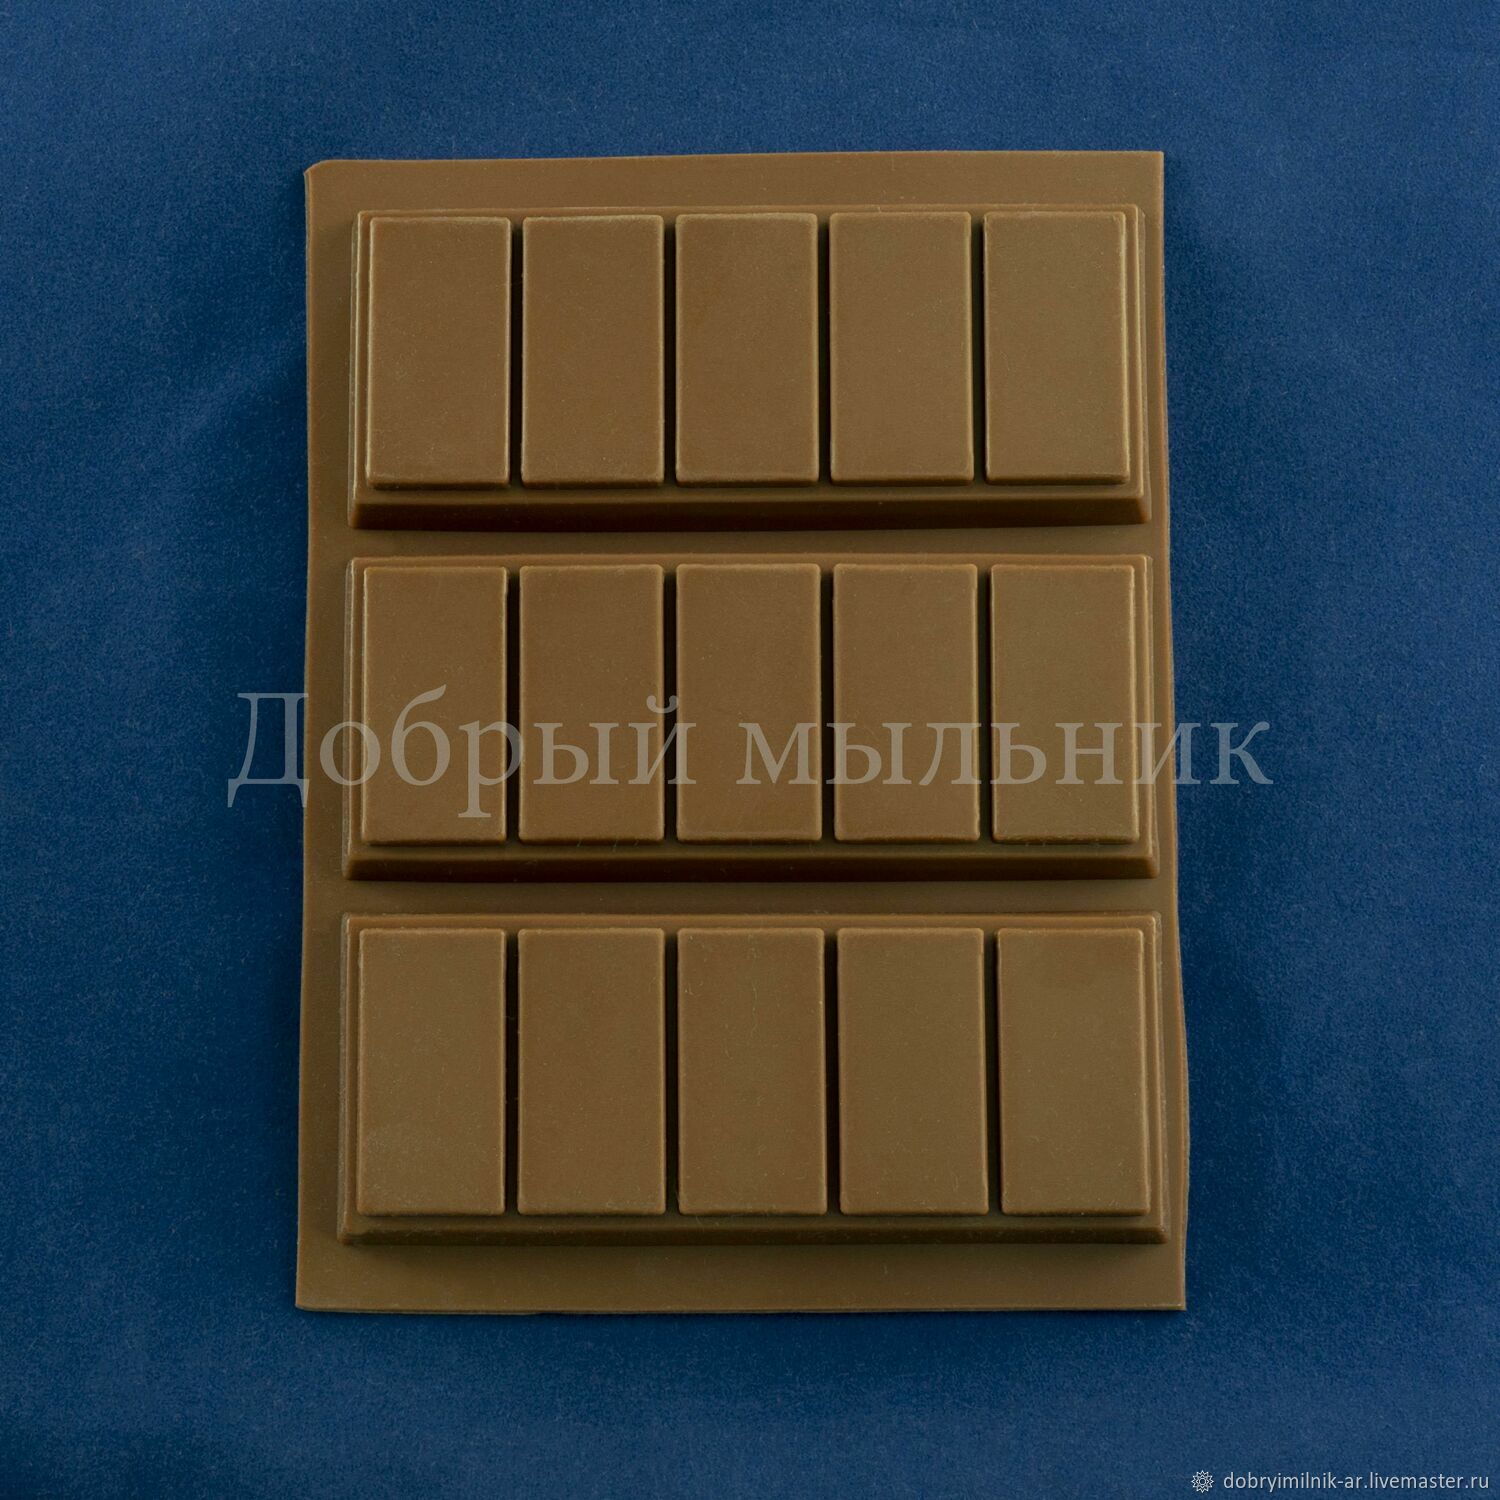 Силиконовая форма Плитка шоколада, Инструменты для косметики, Москва,  Фото №1